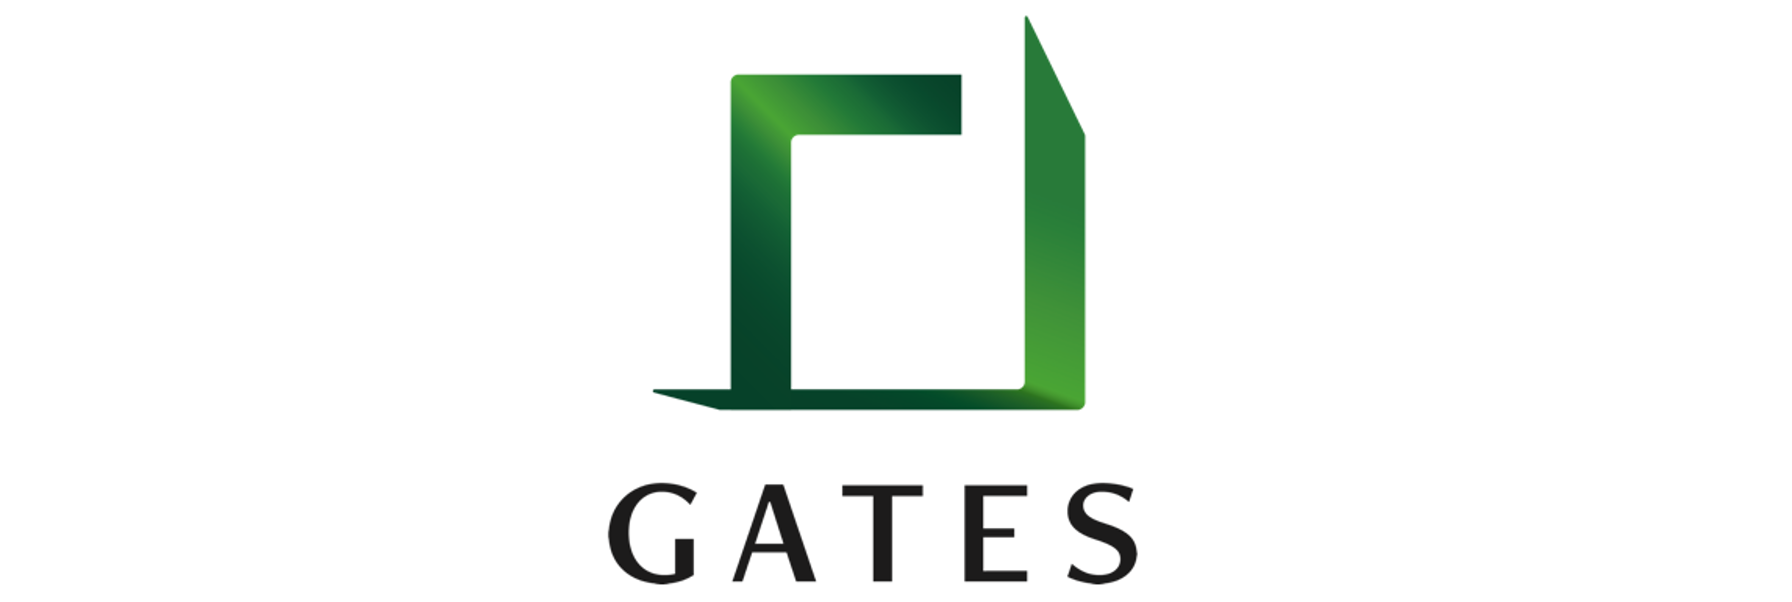 Gates株式会社様 プレイス アビリティの実績 事例紹介